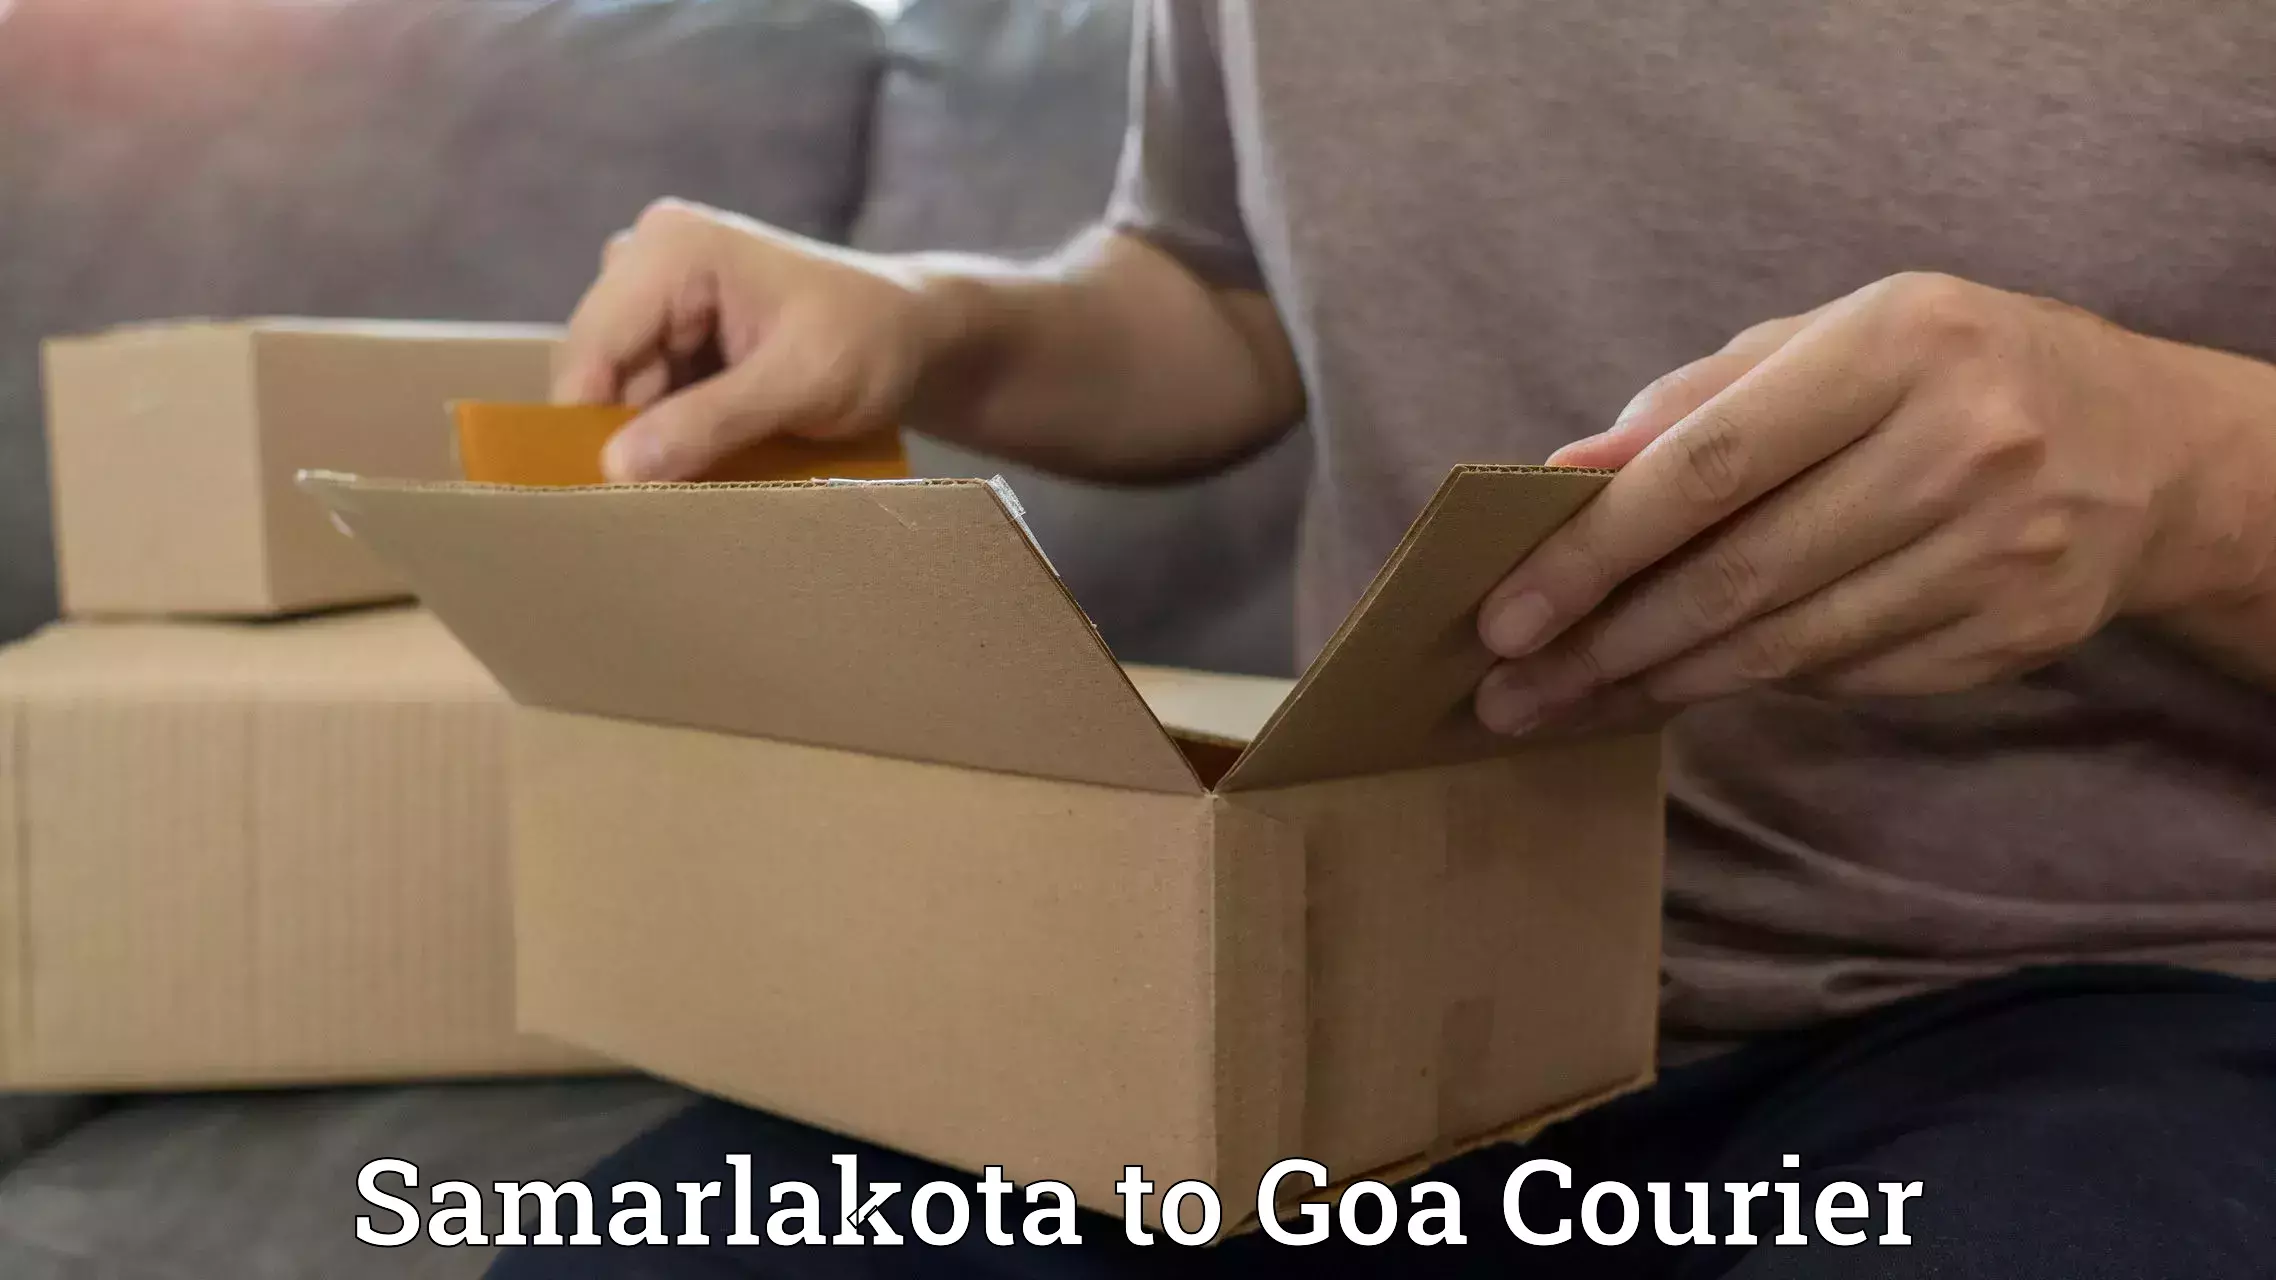 Easy access courier services Samarlakota to South Goa